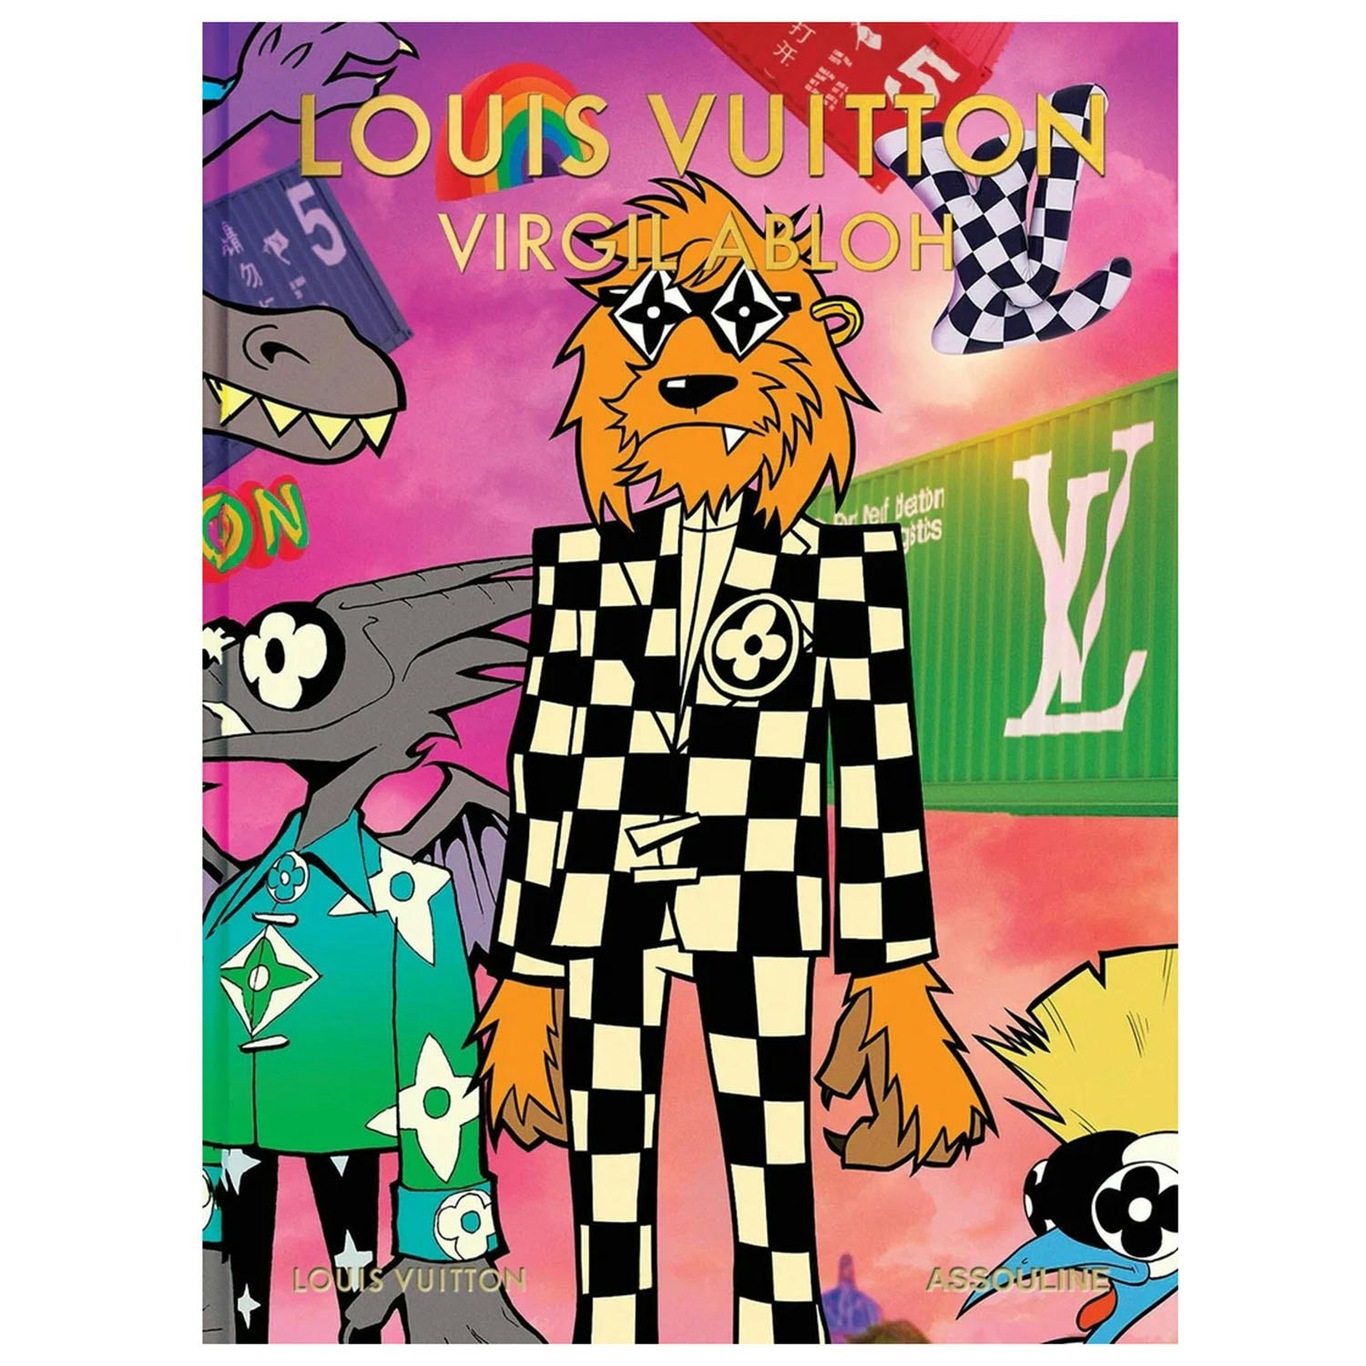 Louis Vuitton: Virgil Abloh (Classic Cartoon Cover) Book